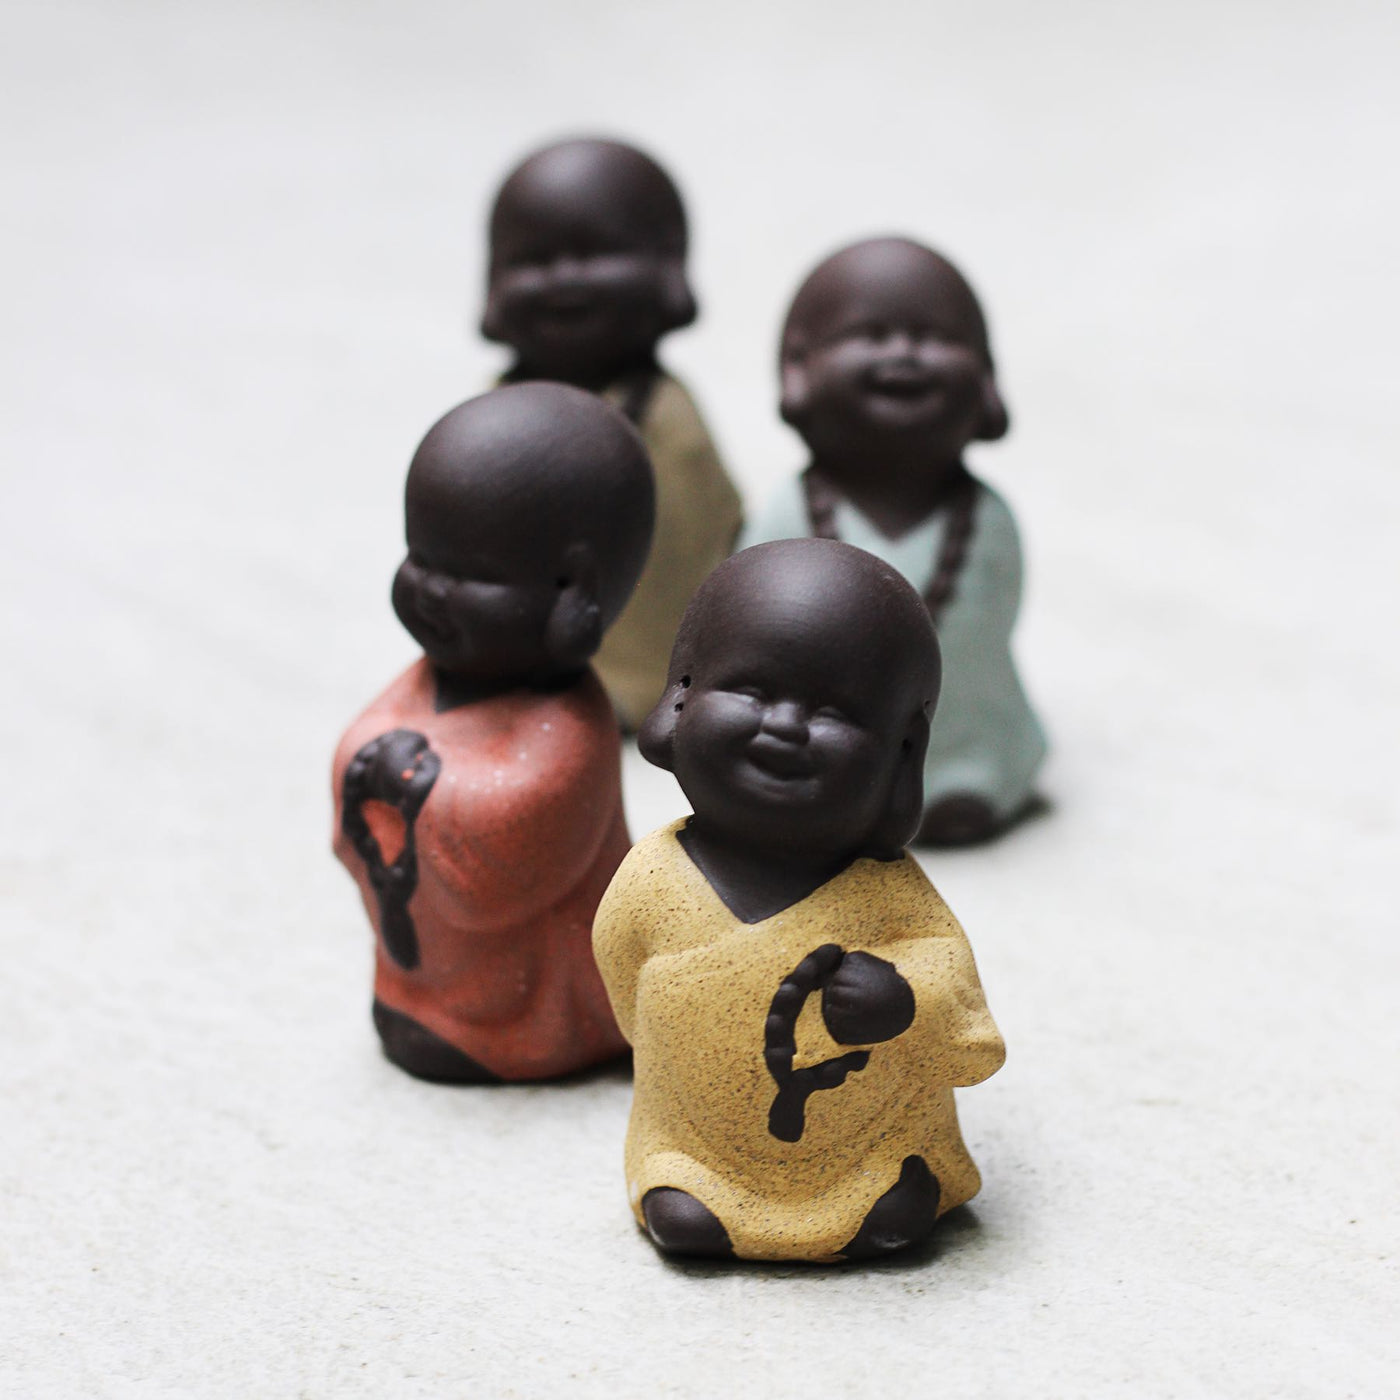 ceramic monk figurine set